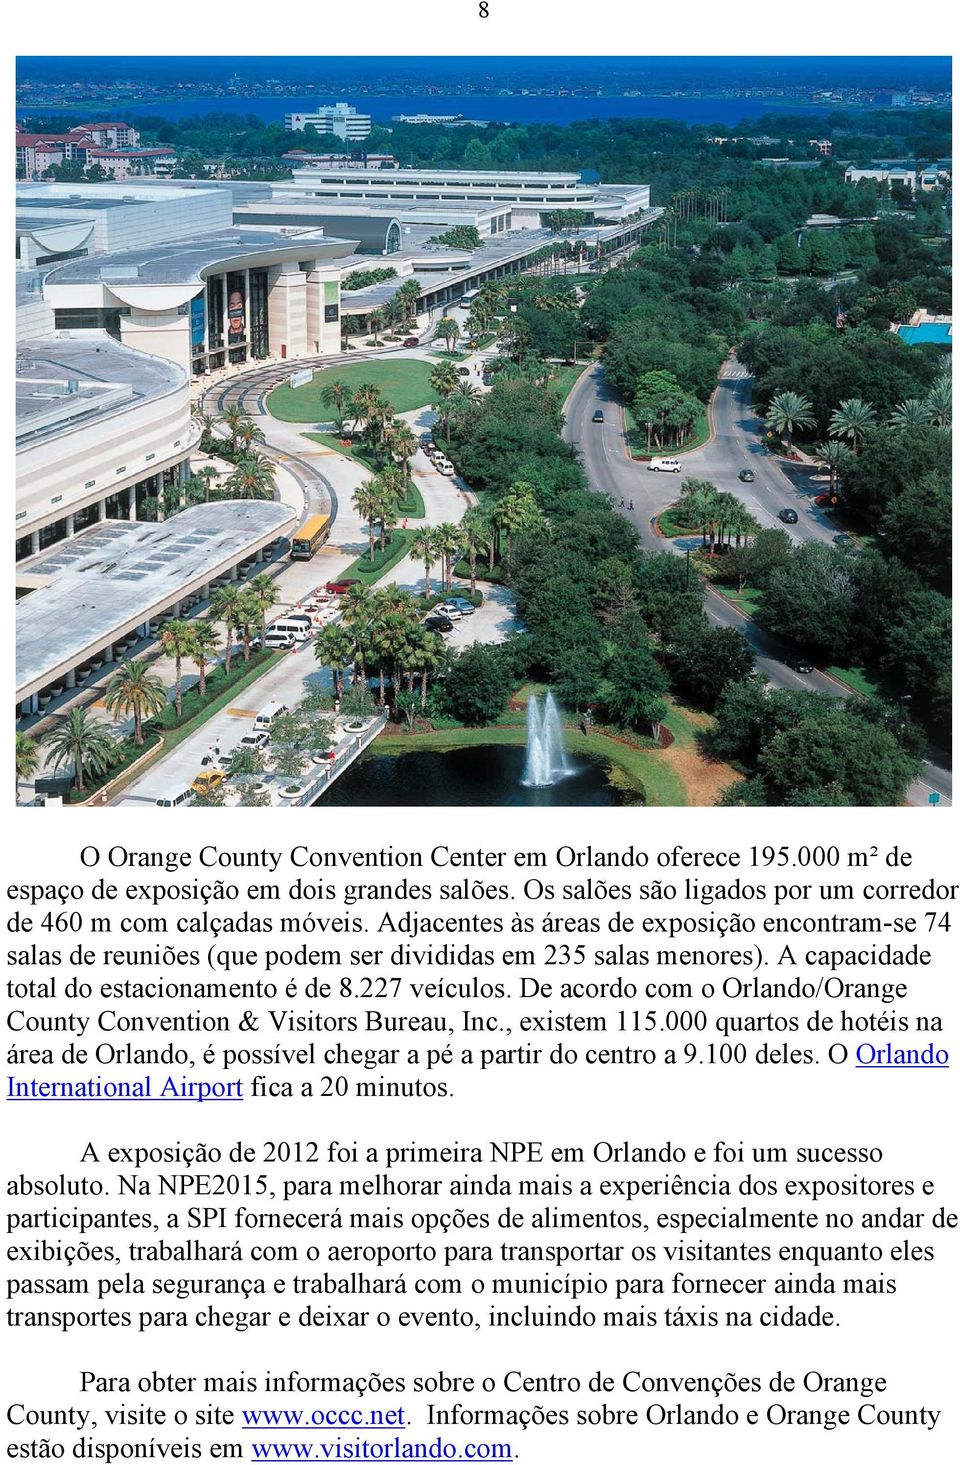 De acordo com o Orlando/Orange County Convention & Visitors Bureau, Inc., existem 115.000 quartos de hotéis na área de Orlando, é possível chegar a pé a partir do centro a 9.100 deles.